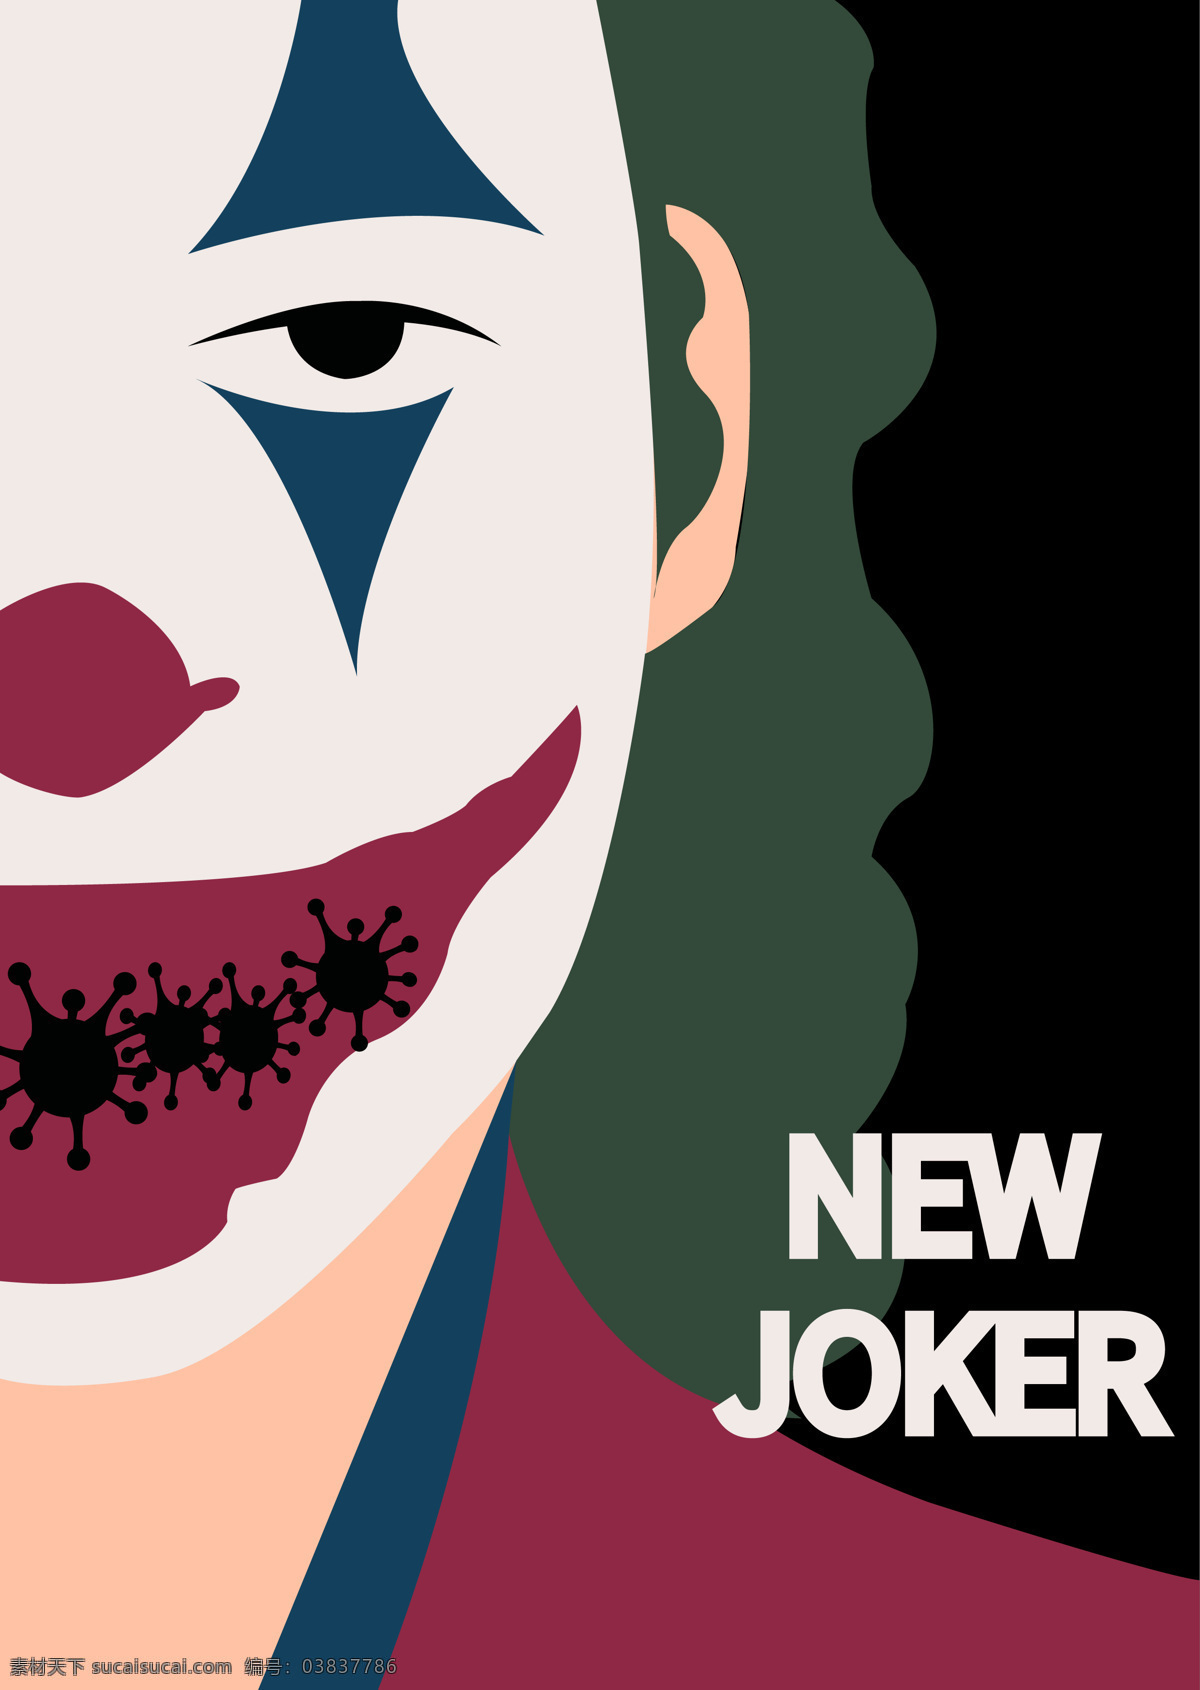 新小丑 疫情 疫情海报 疫情创意海报 小丑 杰克 文化艺术